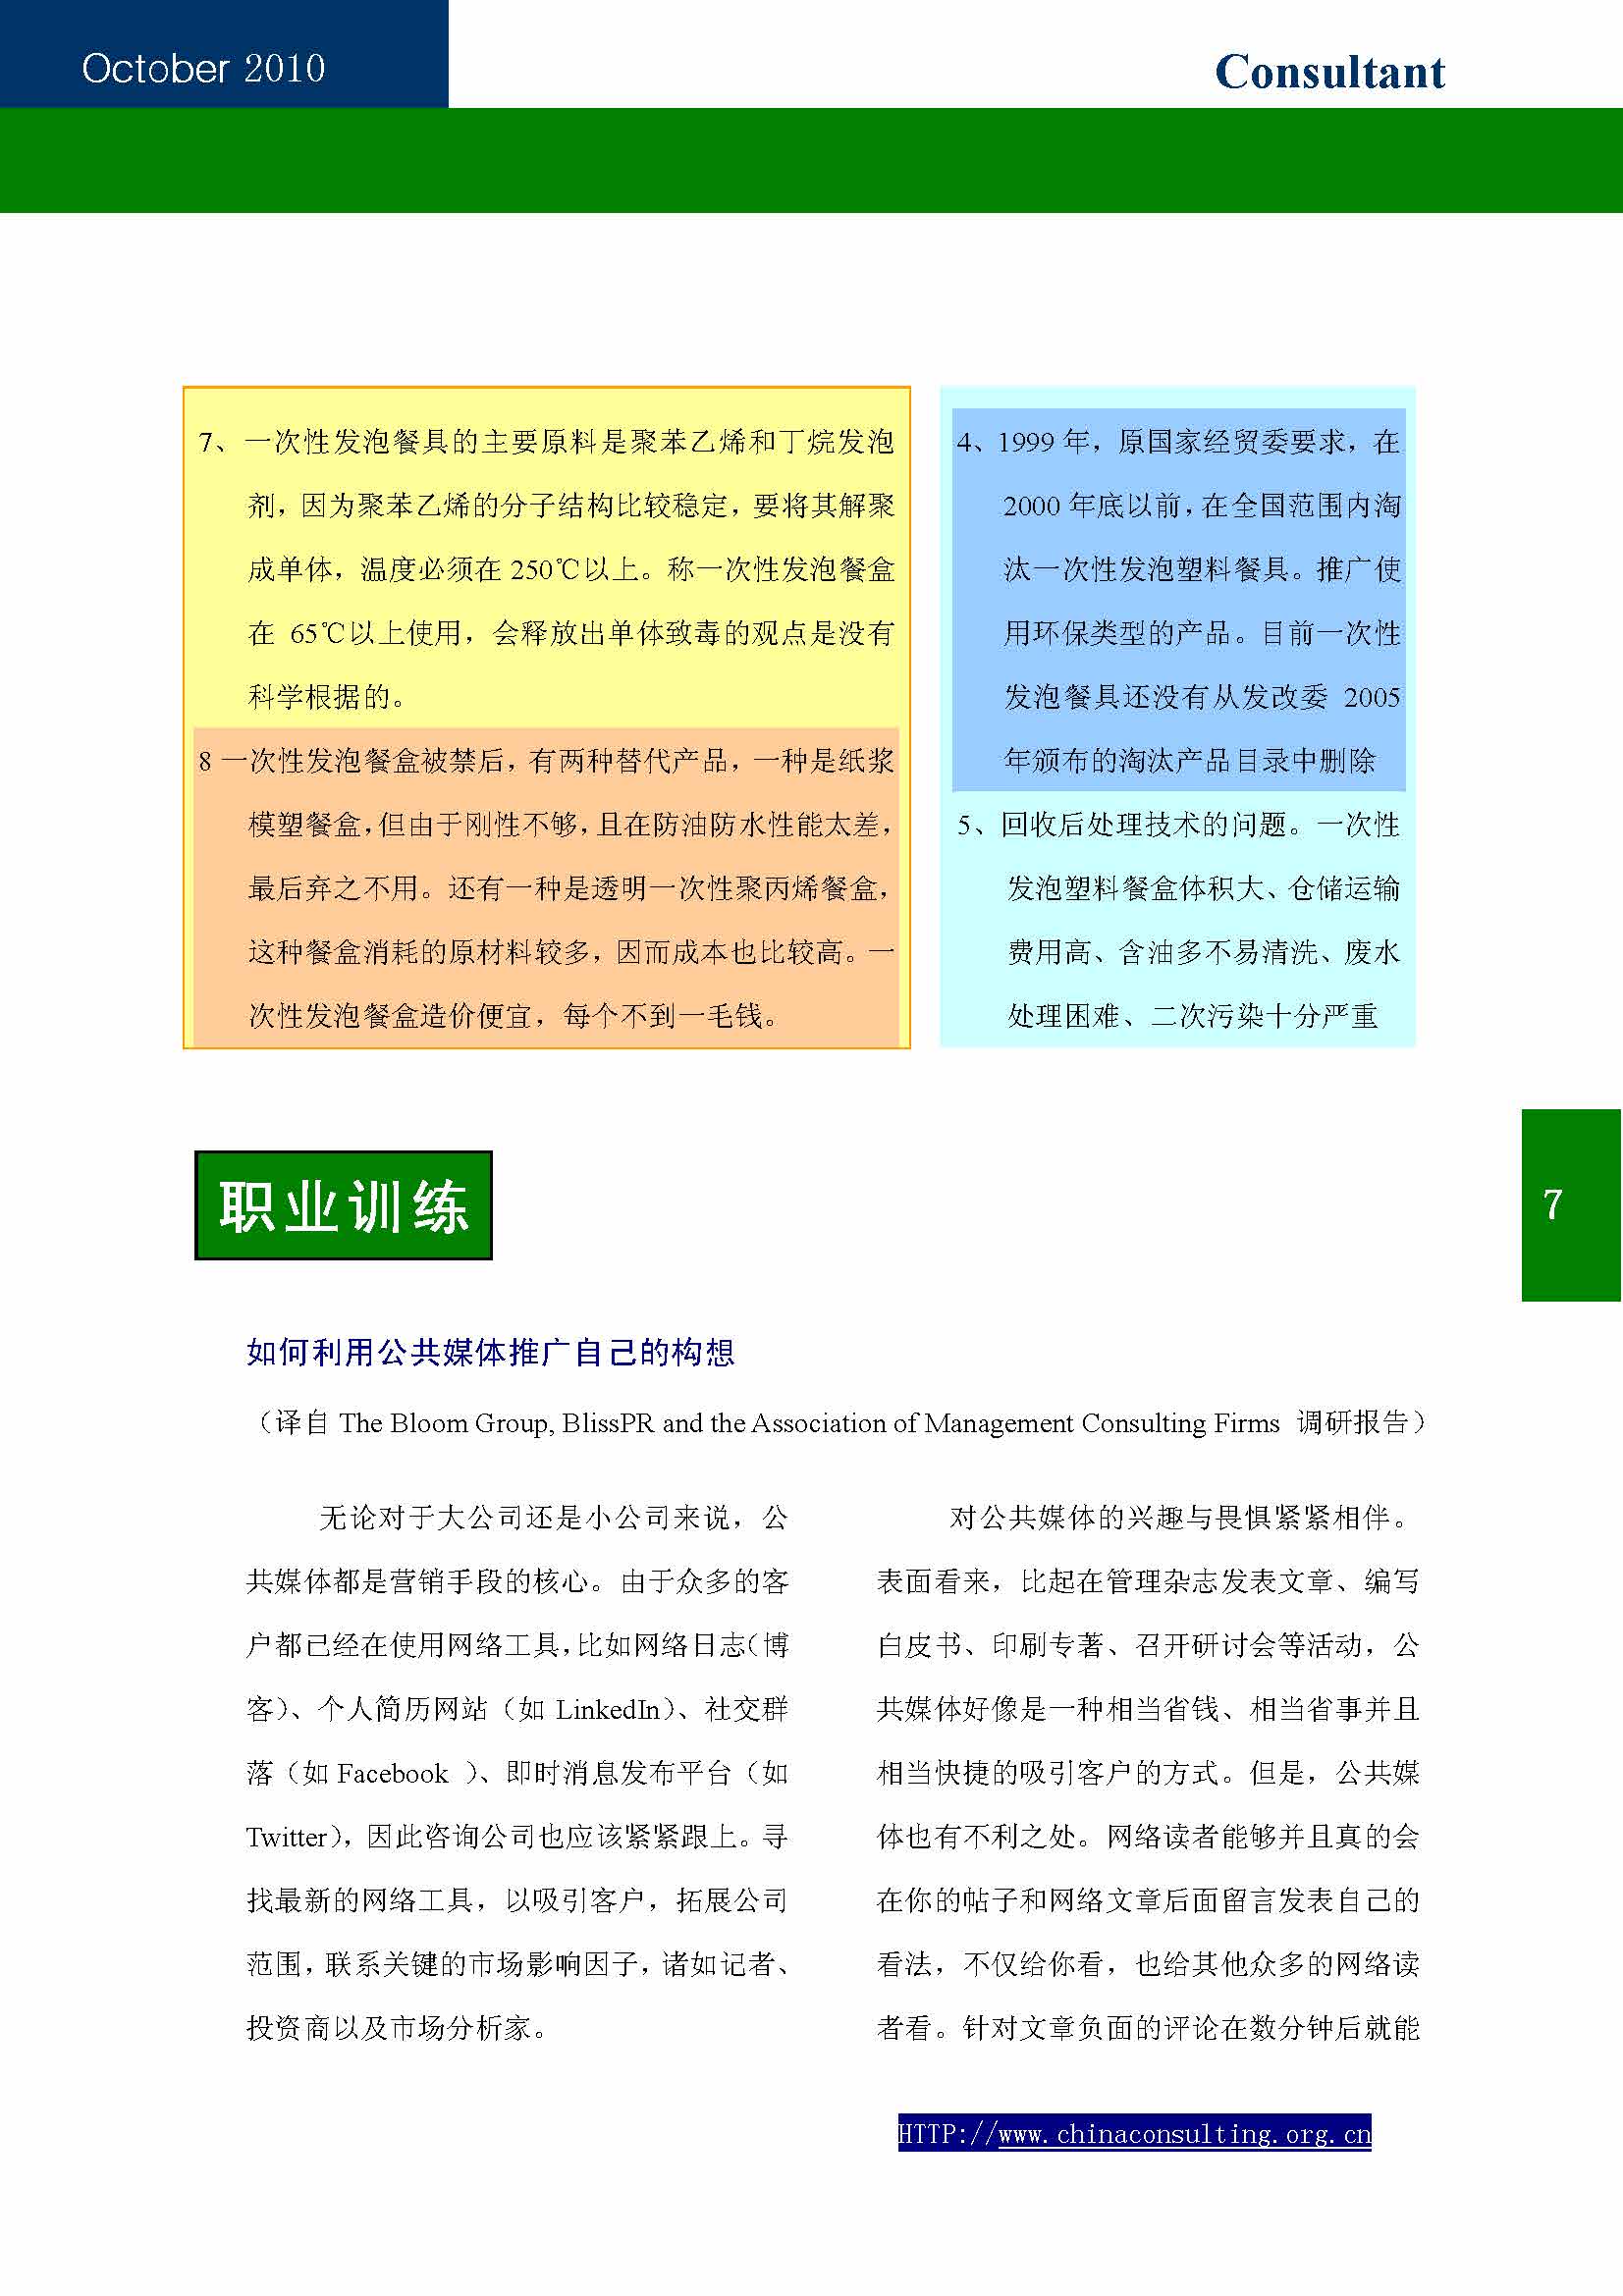 12中国科技咨询协会第十二期会刊_页面_09.jpg